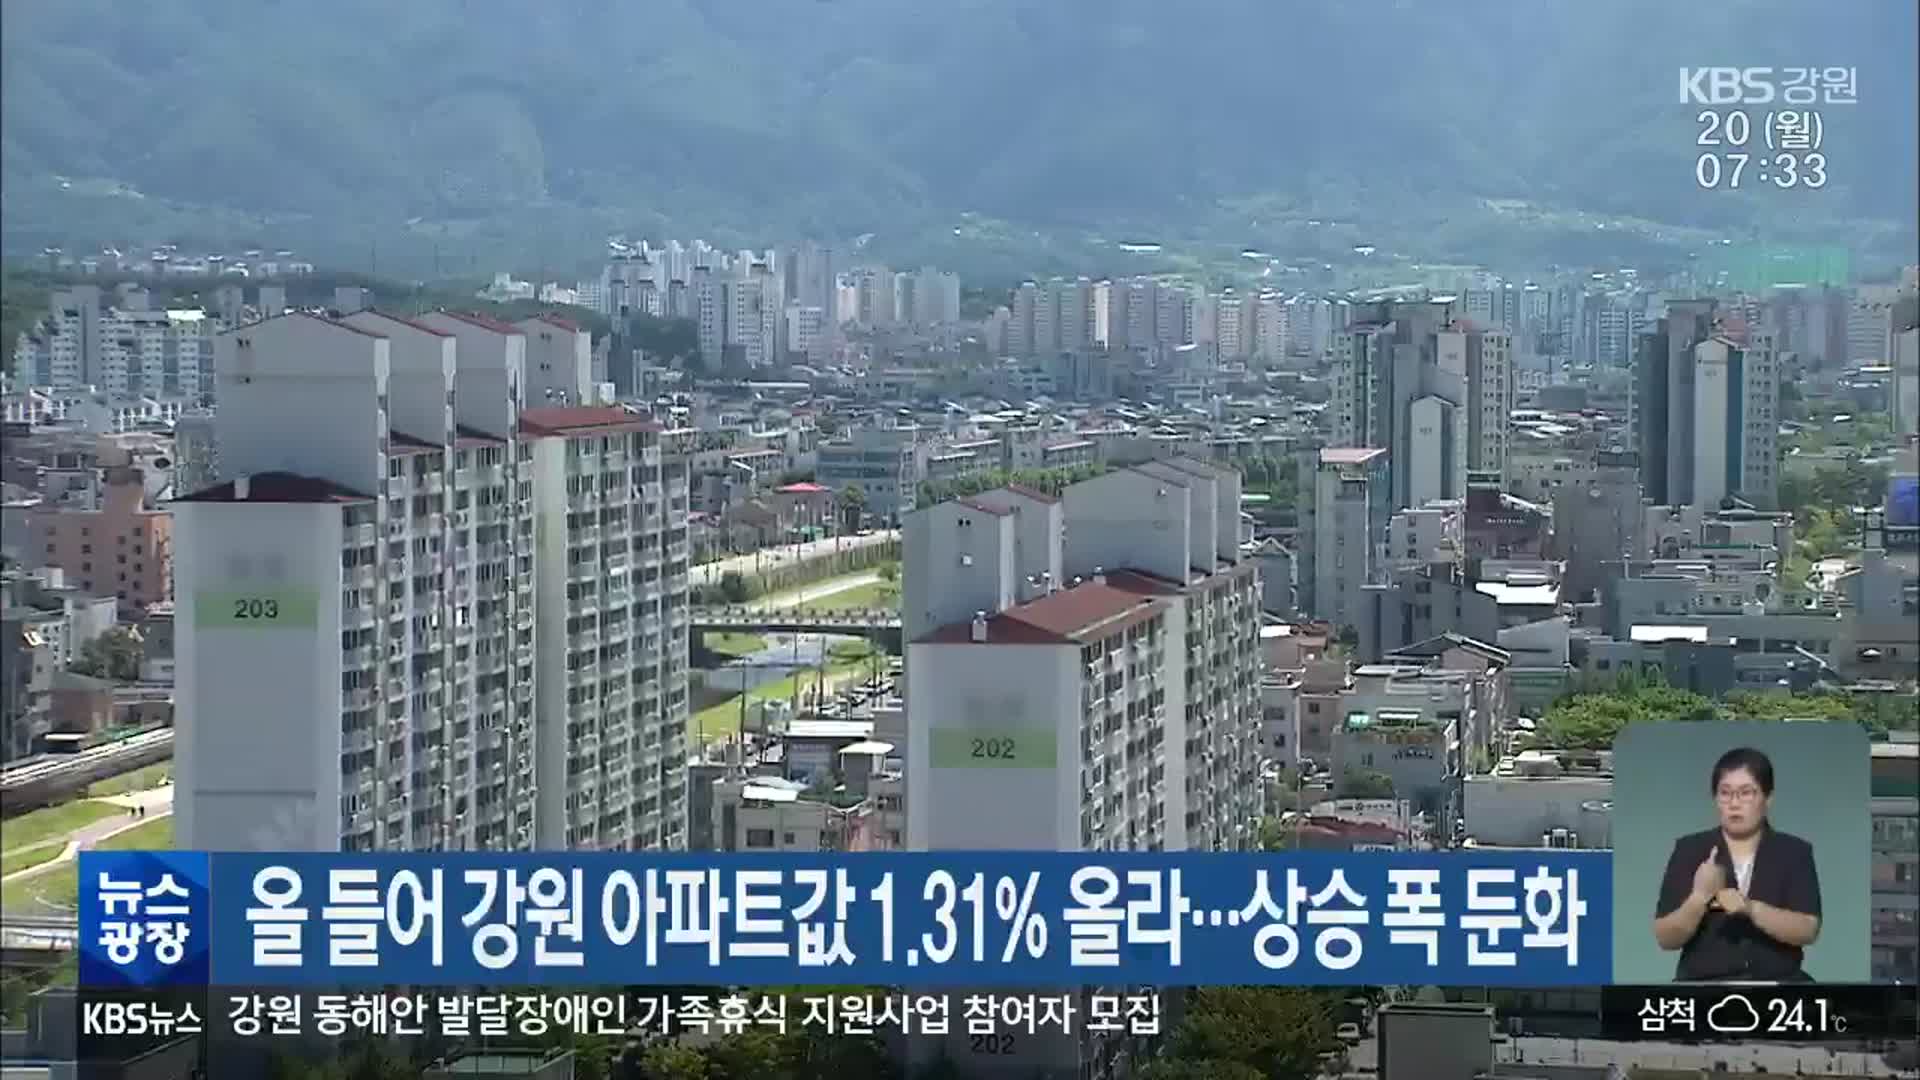 올 들어 강원 아파트값 1.31% 올라…상승 폭 둔화